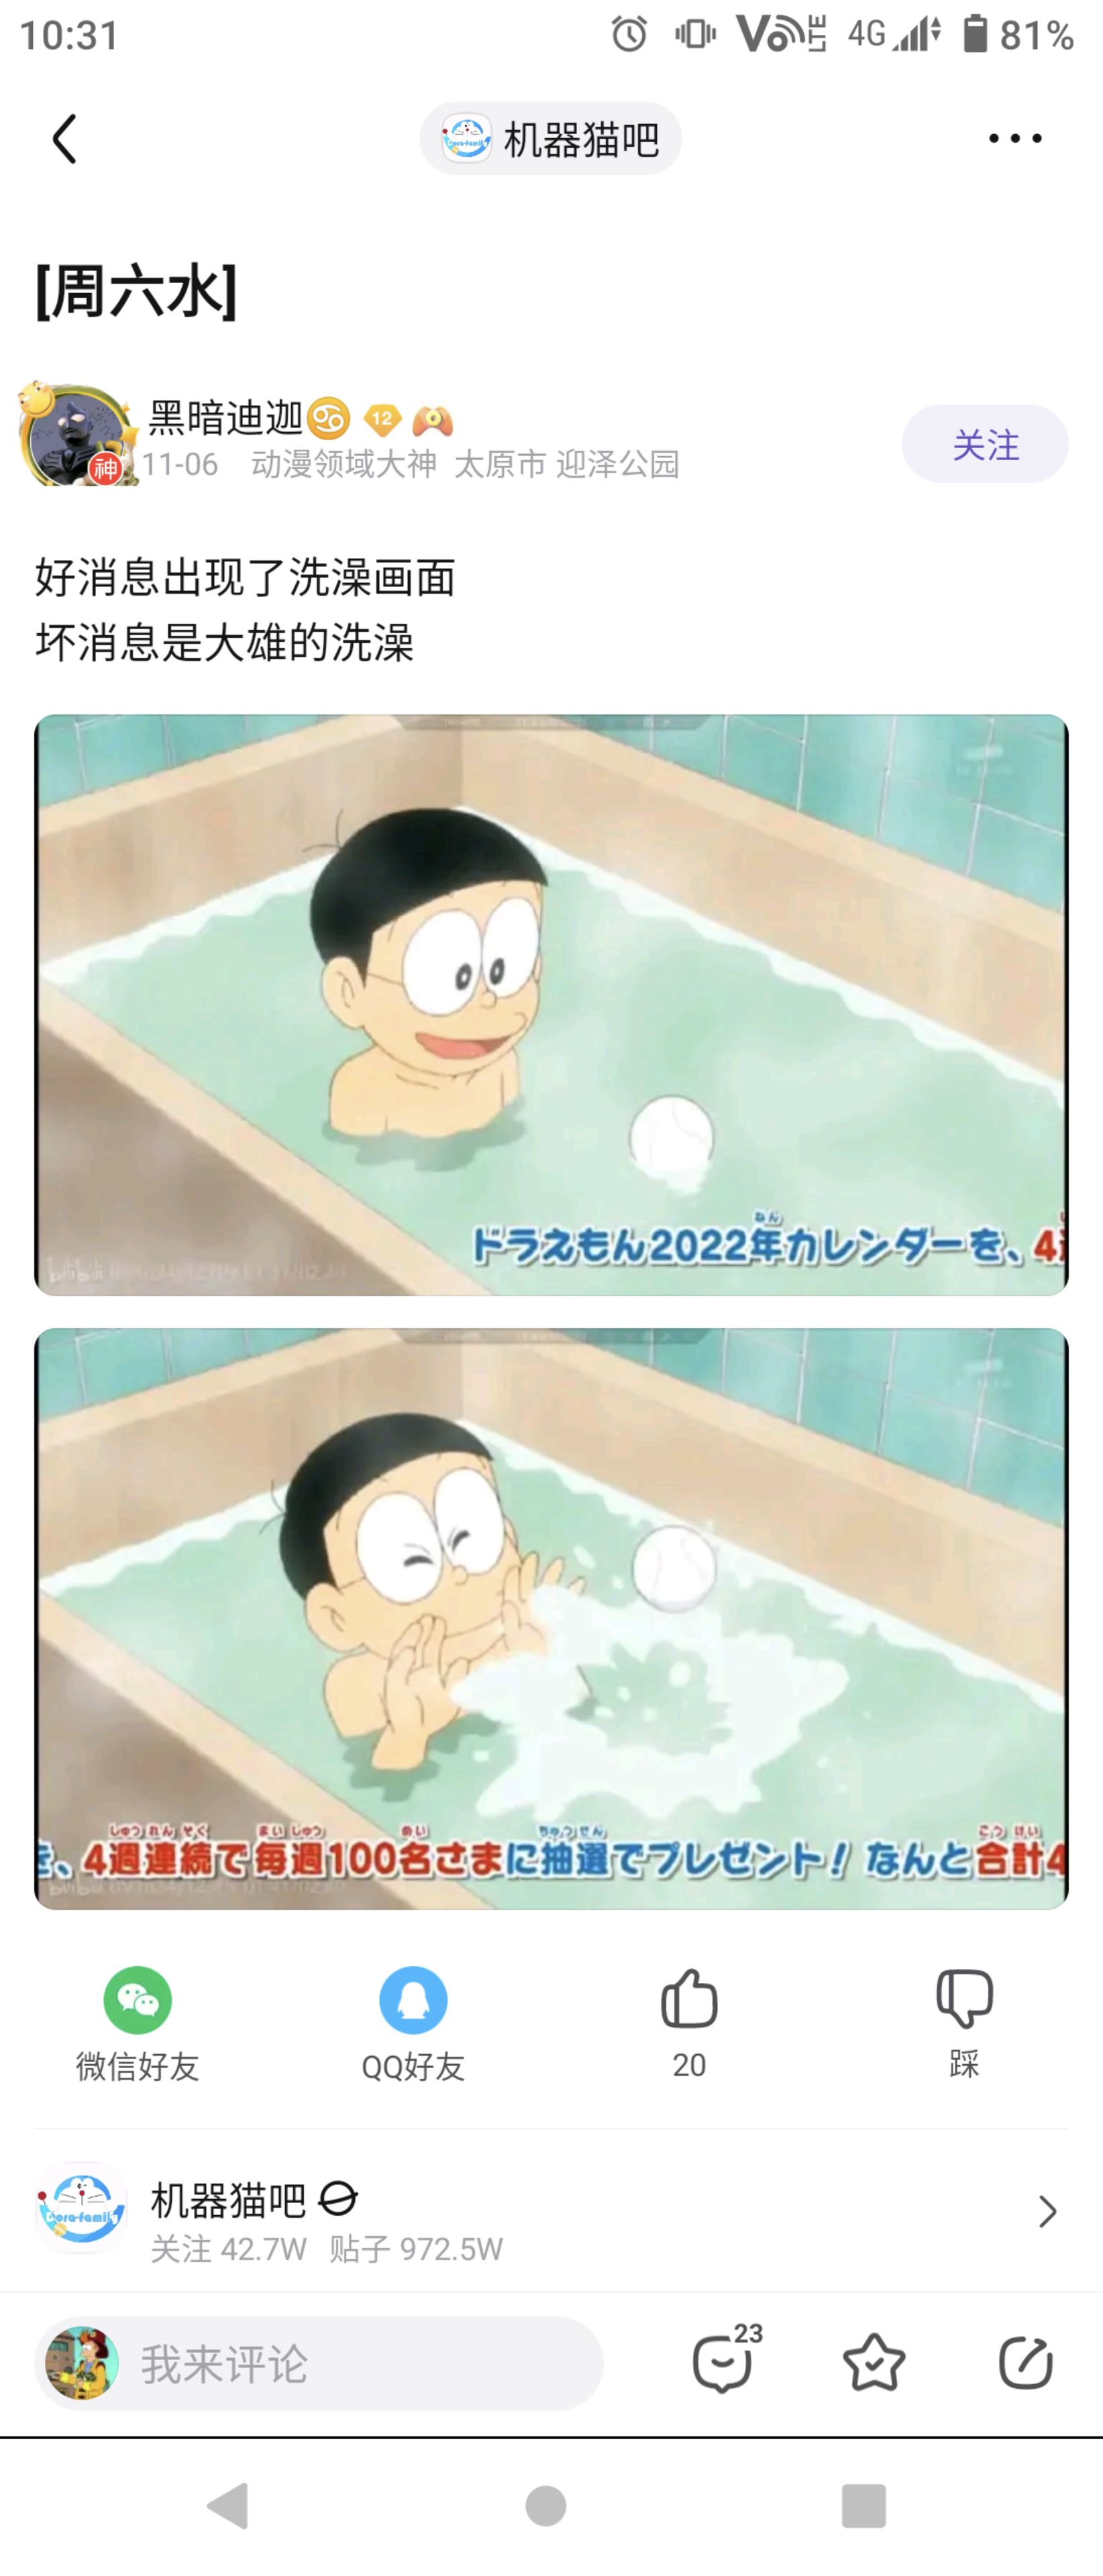 哆啦A梦：大雄用凝固灯恶作剧了静香的洗澡水，导致静香洗澡不顺利！